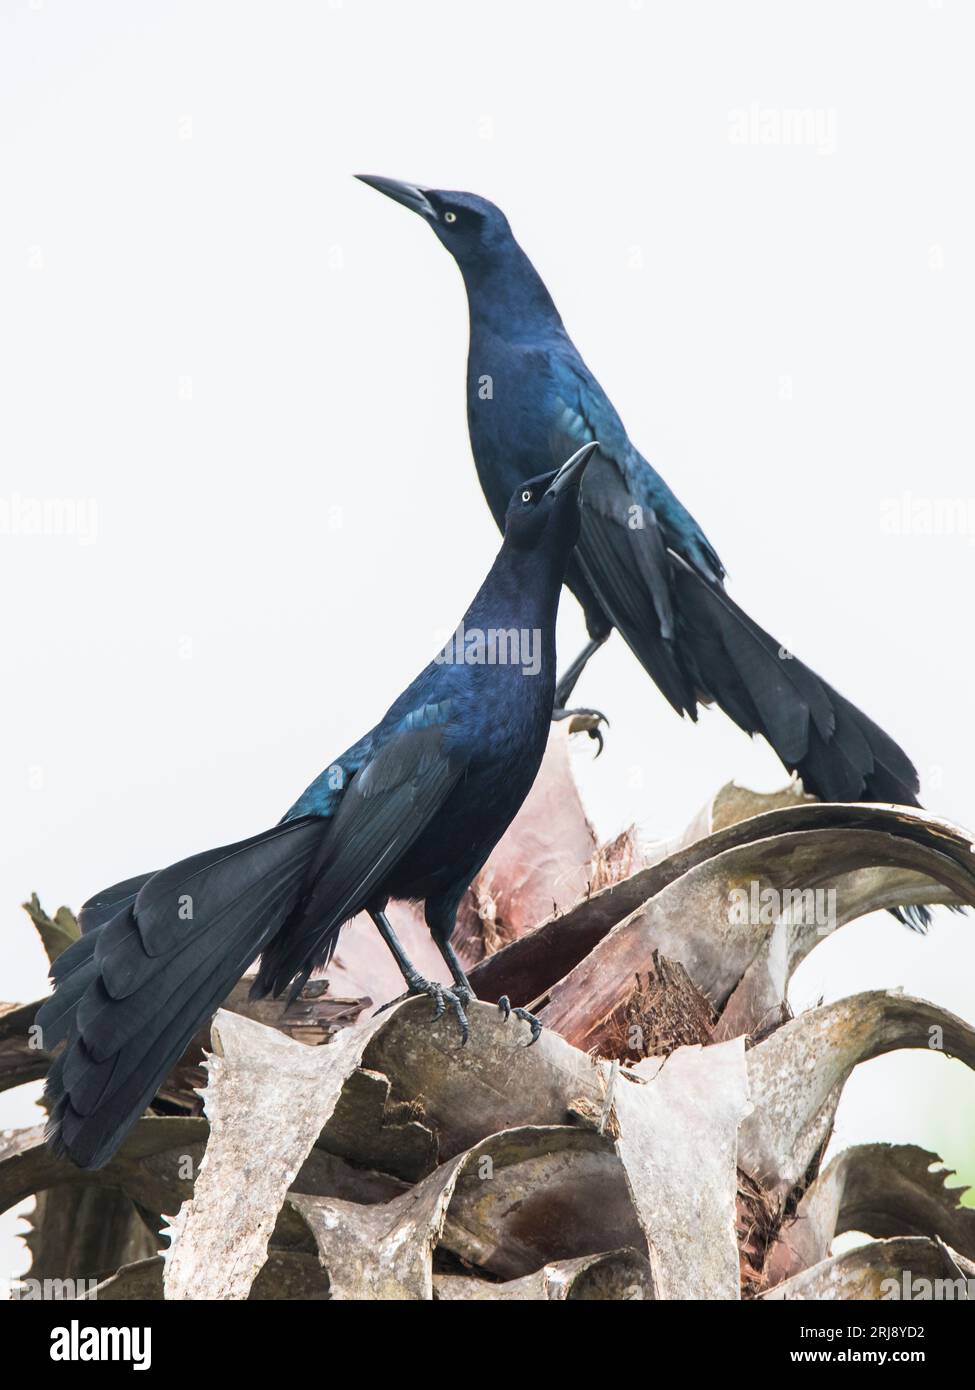 Homme adulte Grackles à queue grandiose se montrant et se défiant mutuellement, zone d'observation des oiseaux de Leona Turnbull, Port Aransas, Texas, États-Unis Banque D'Images